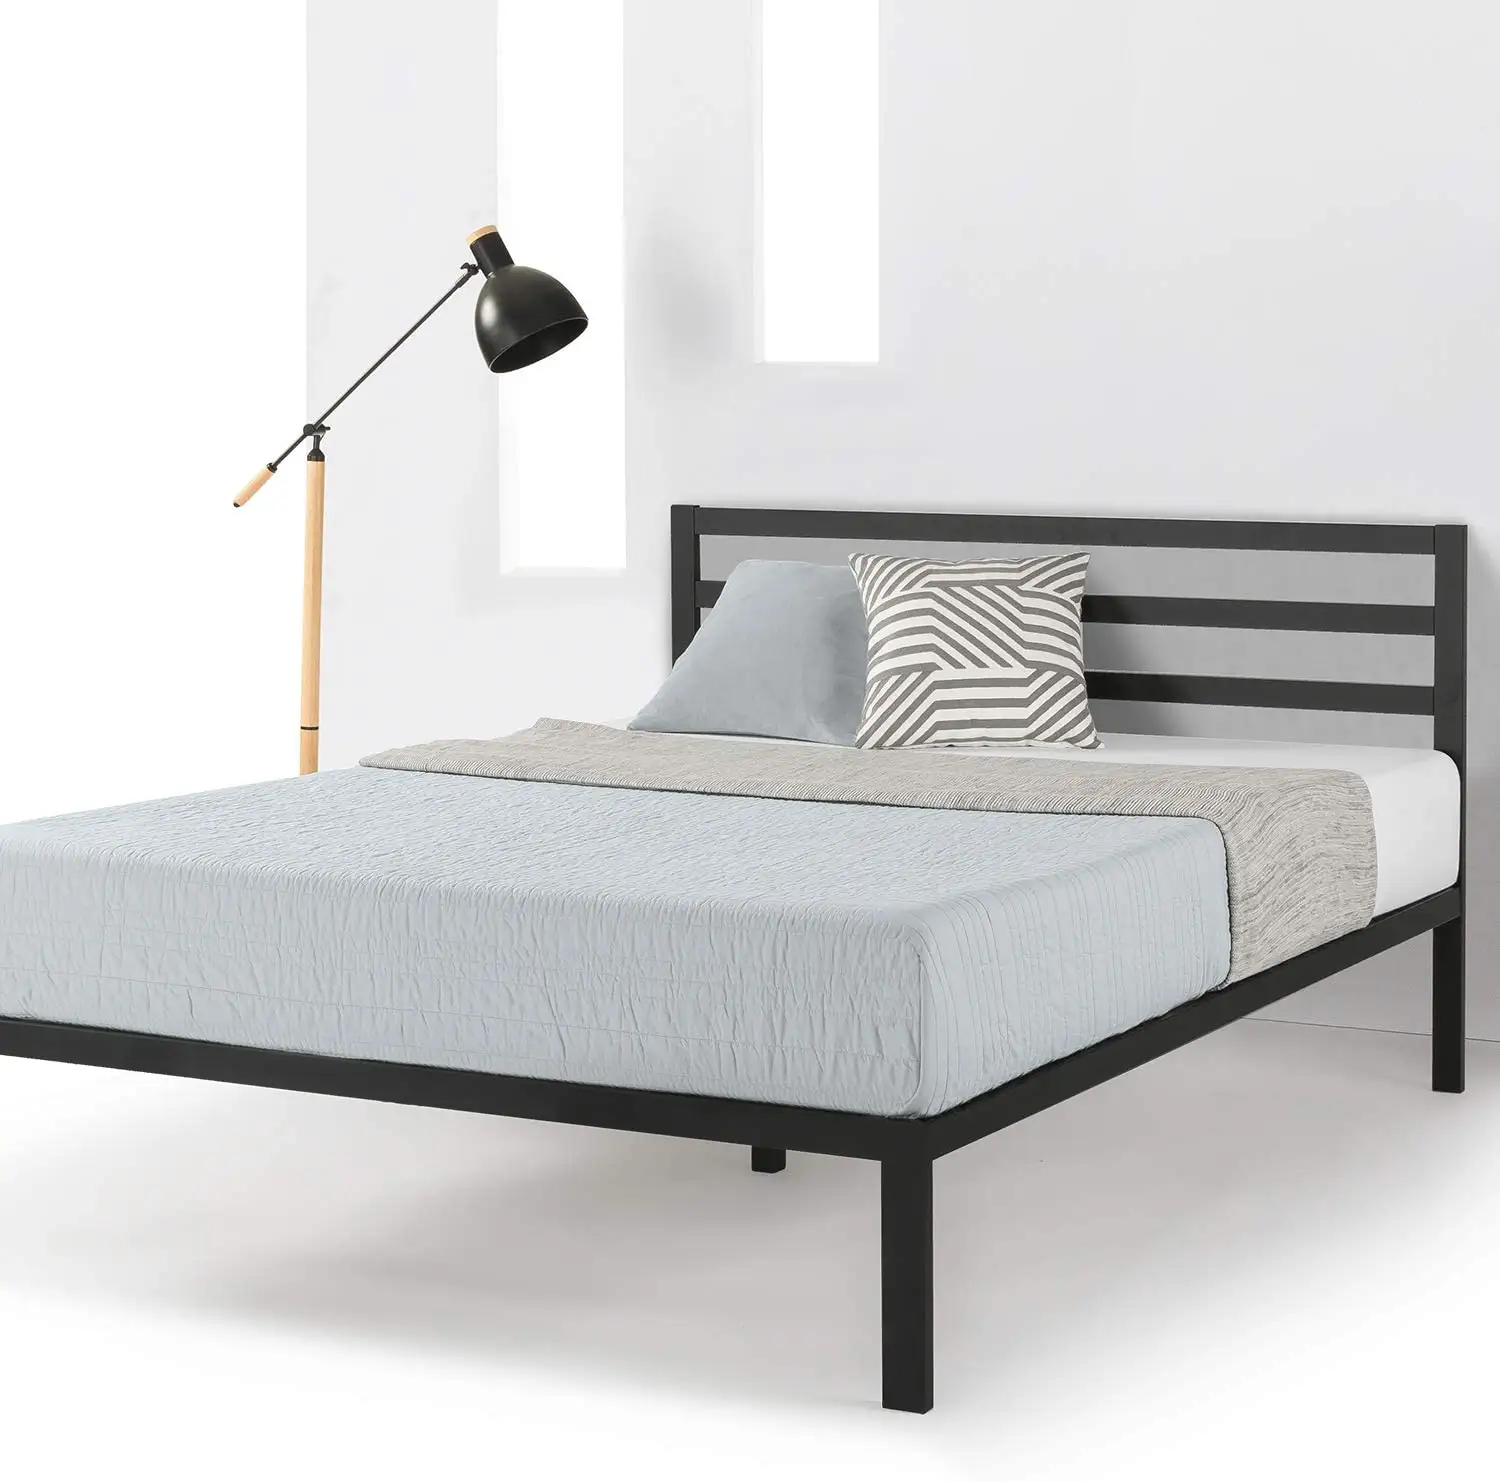 राजा के आकार के बेडरूम के लिए लोहे के लोगो के साथ काले आधुनिक घर डिजाइन में 4 इंच भारी शुल्क धातु मंच बिस्तर फ्रेम